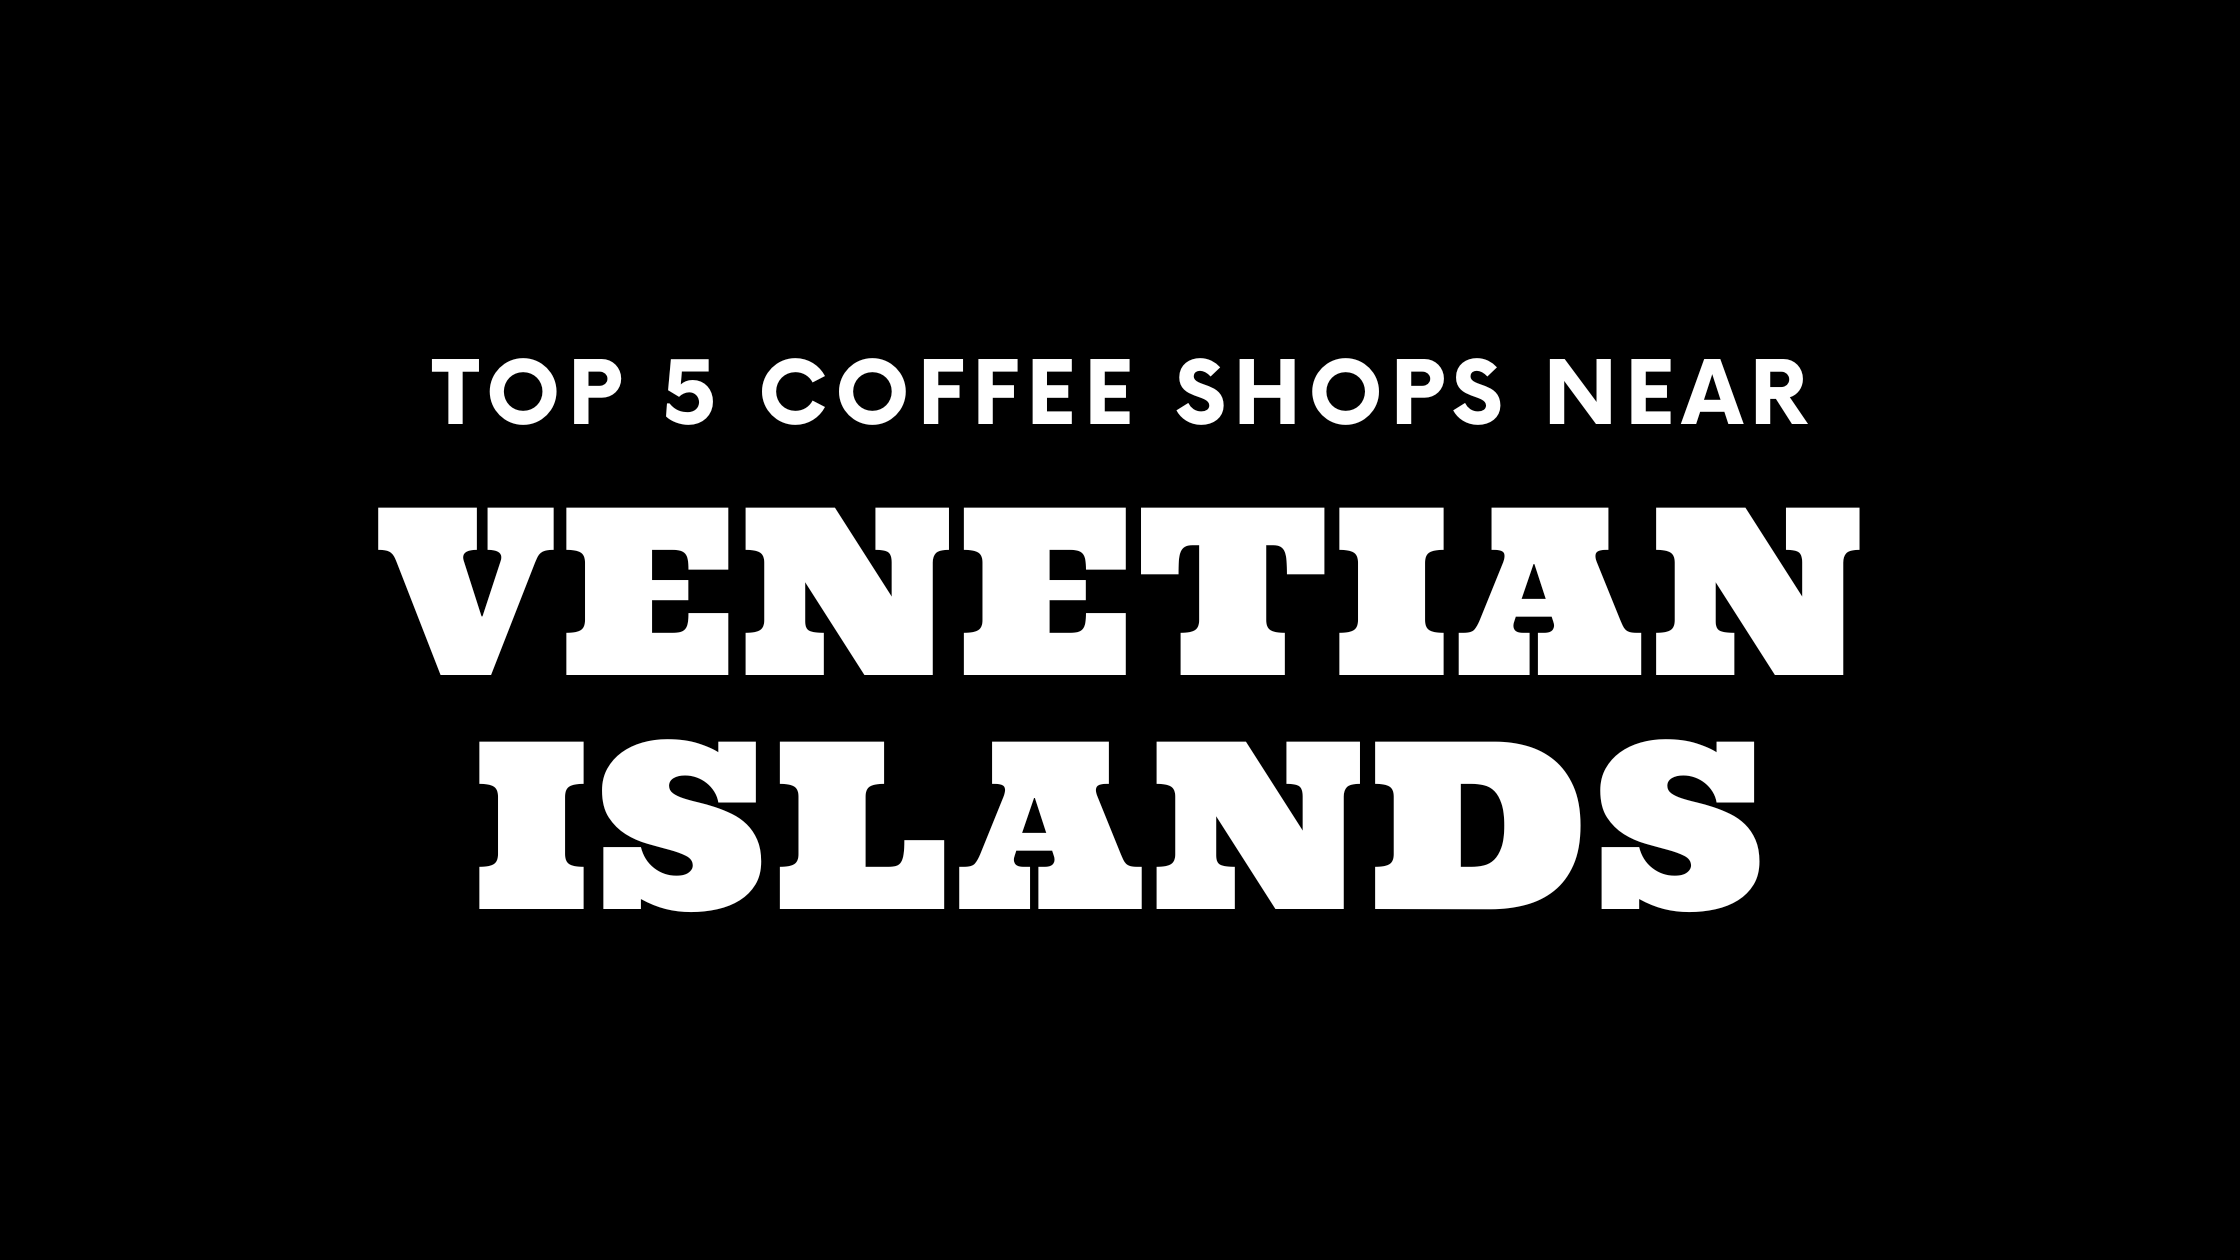 Top 5 Coffee Shops Near Venetian Islands